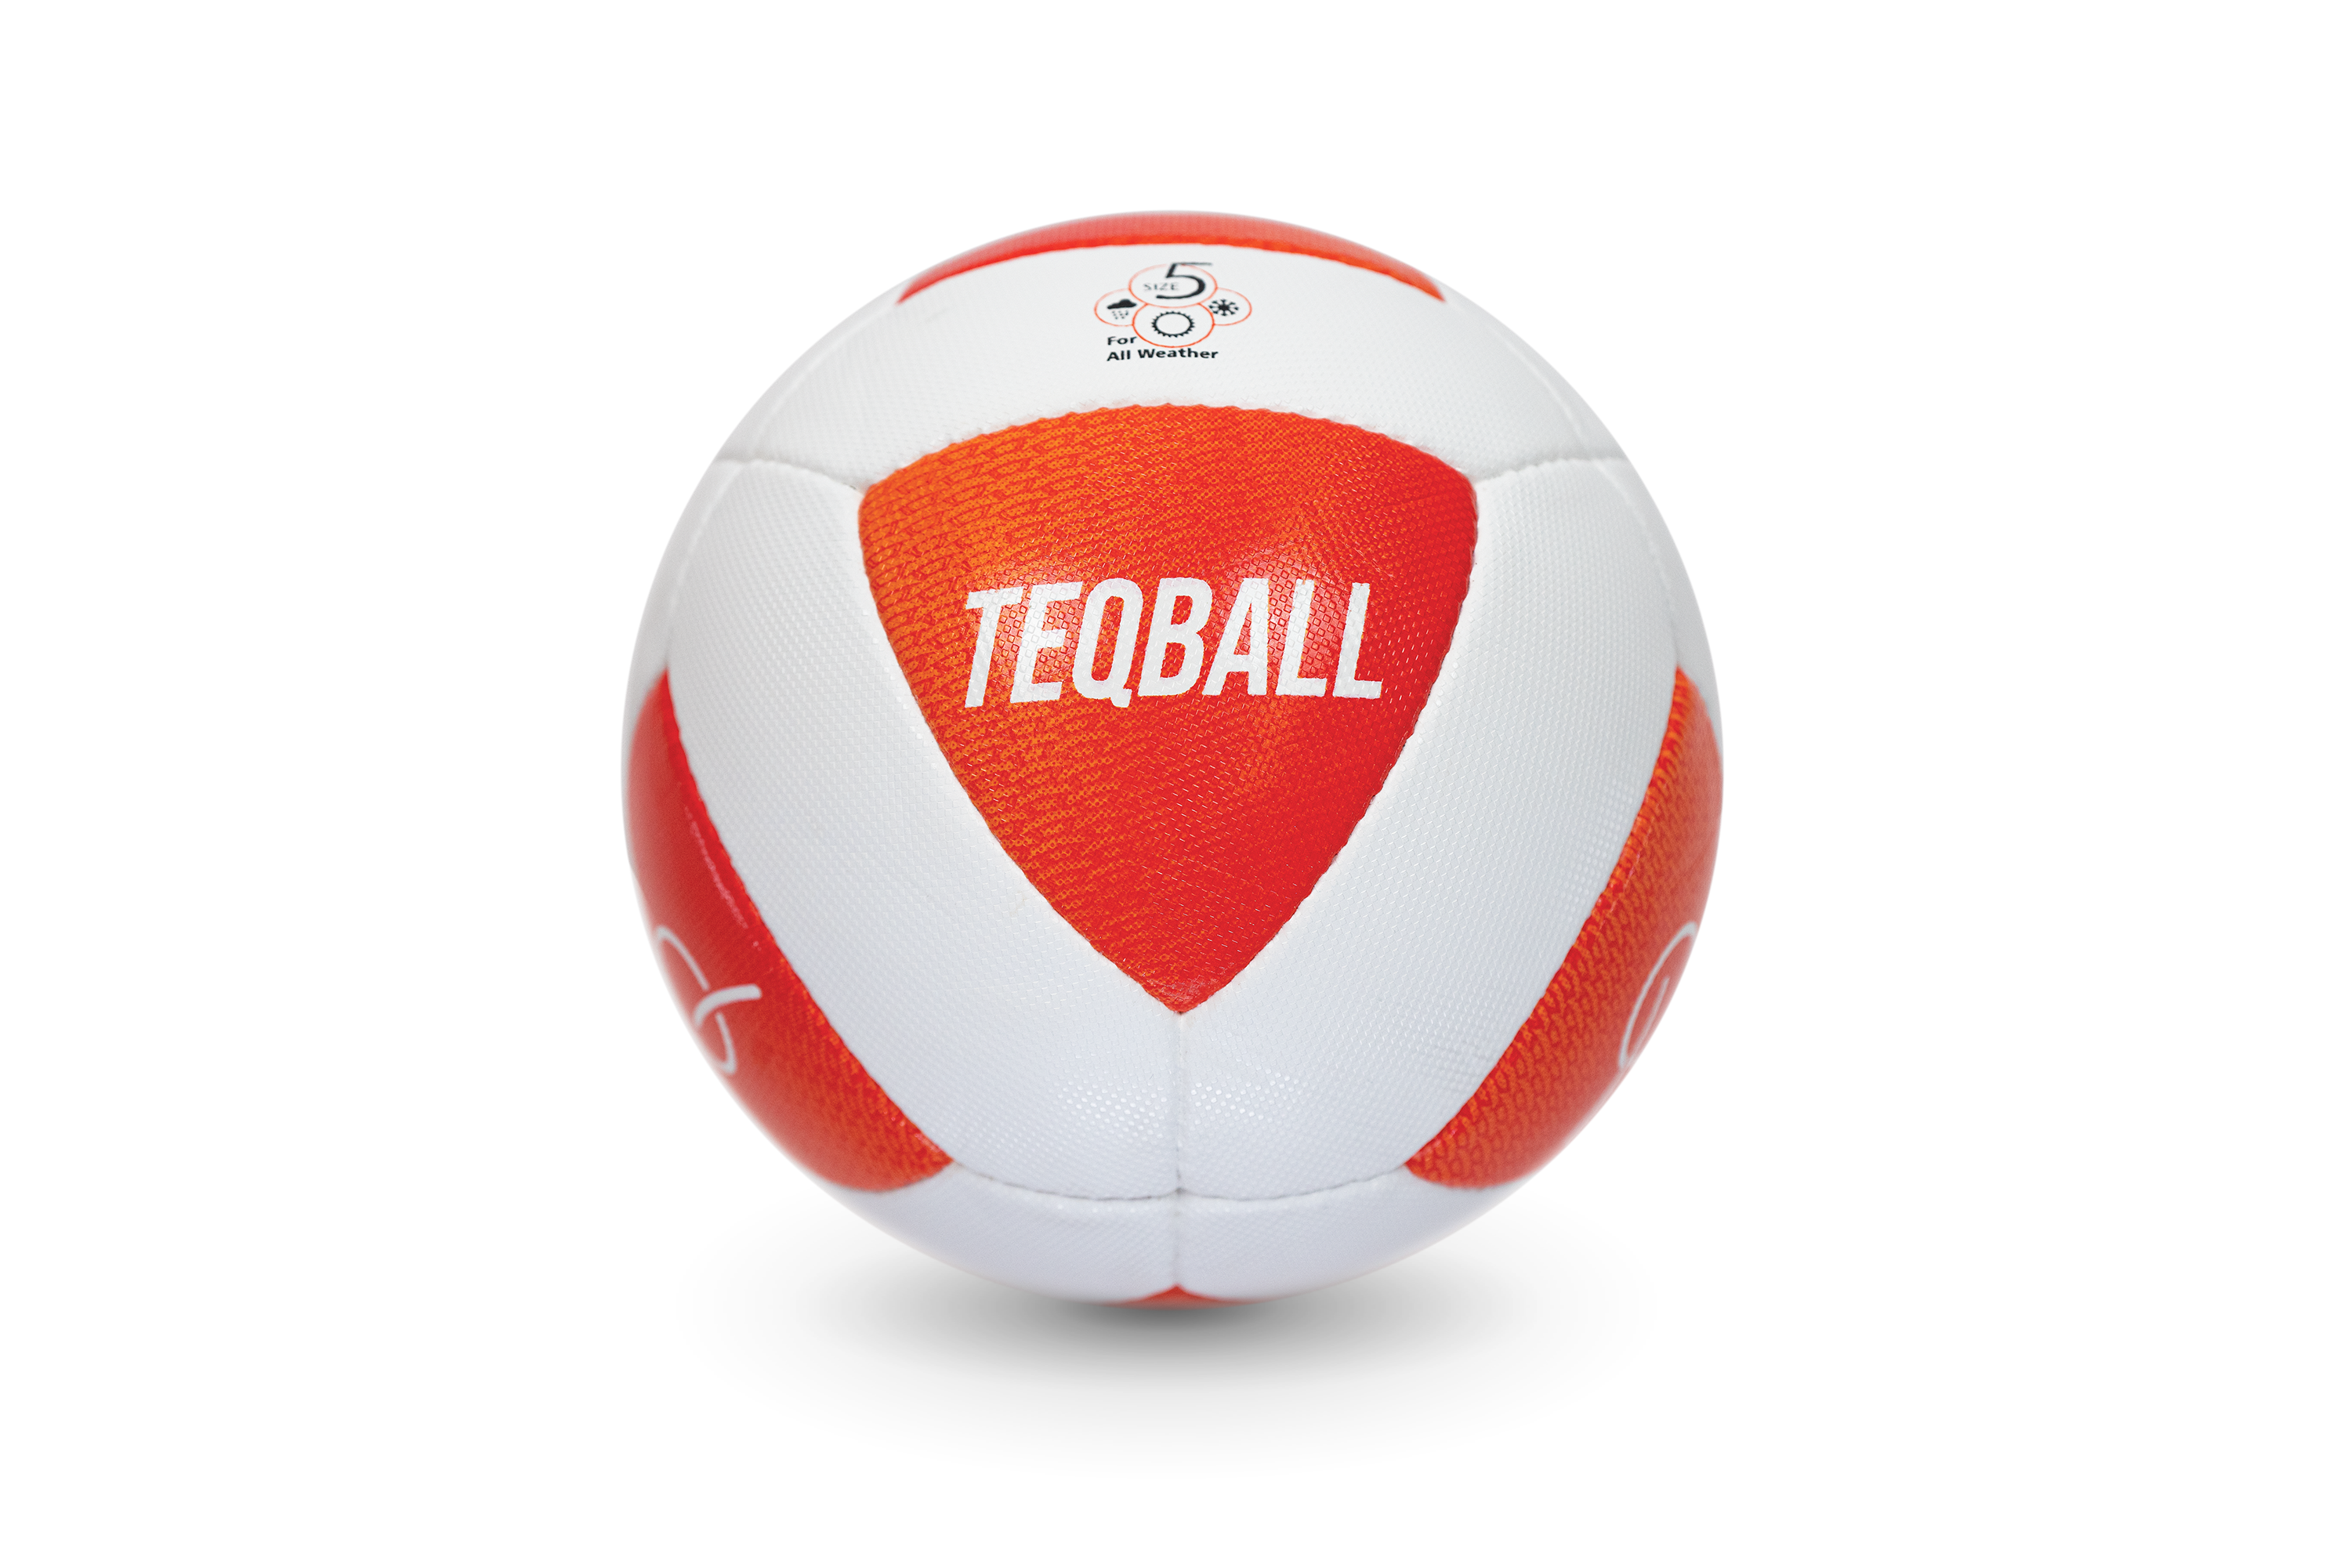 การแข่งขันเทคบอล (Teqball) ชิงแชมป์โลกประจำปี 2023 ณ กรุงเทพฯ การแข่งขันนอกยุโรปครั้งแรก ดึงผู้เข้าแข่งขันจากหลายประเทศเป็นจำนวนมาก